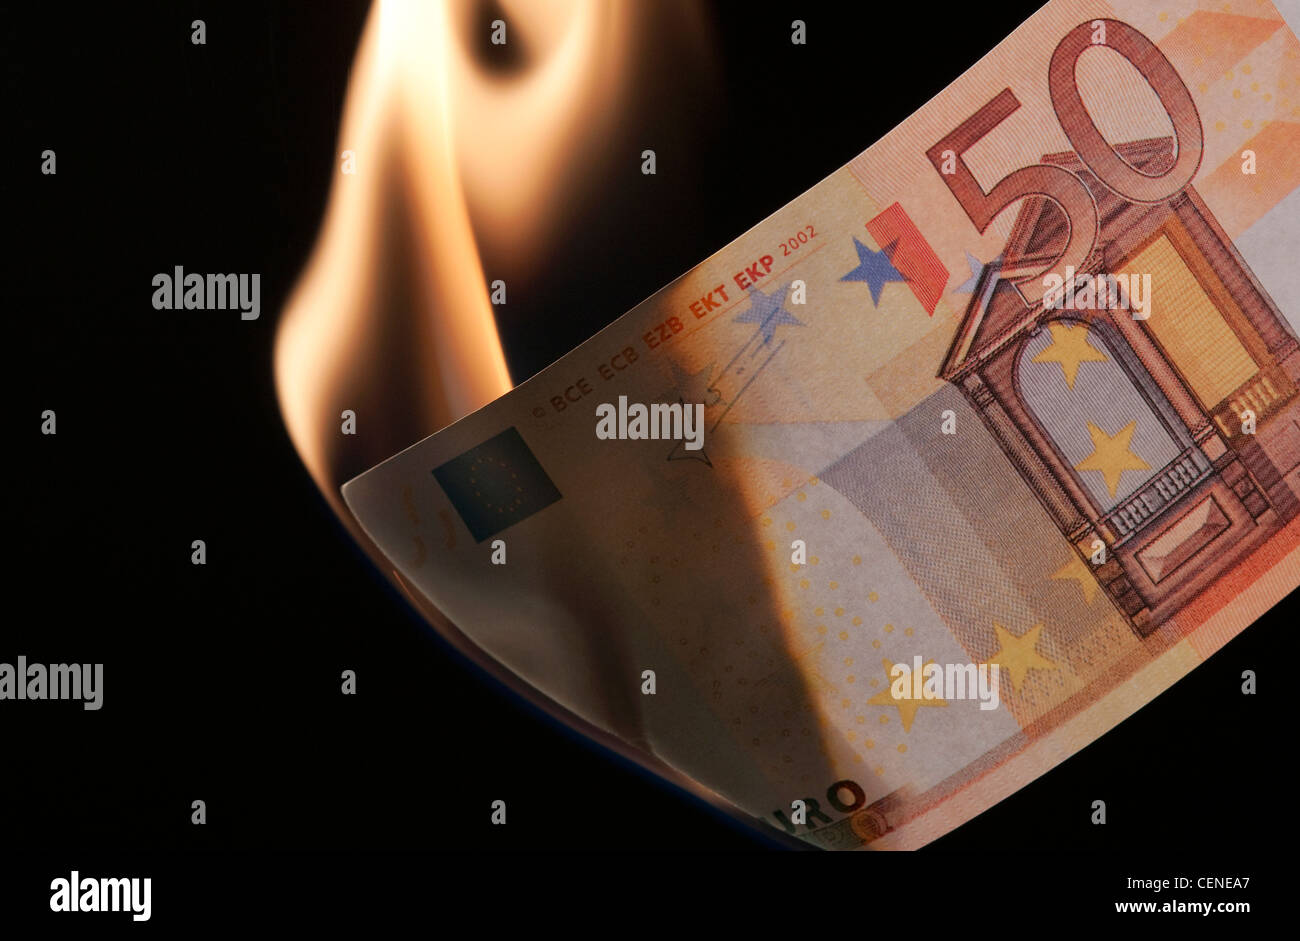 burning money on black background Stock Photo